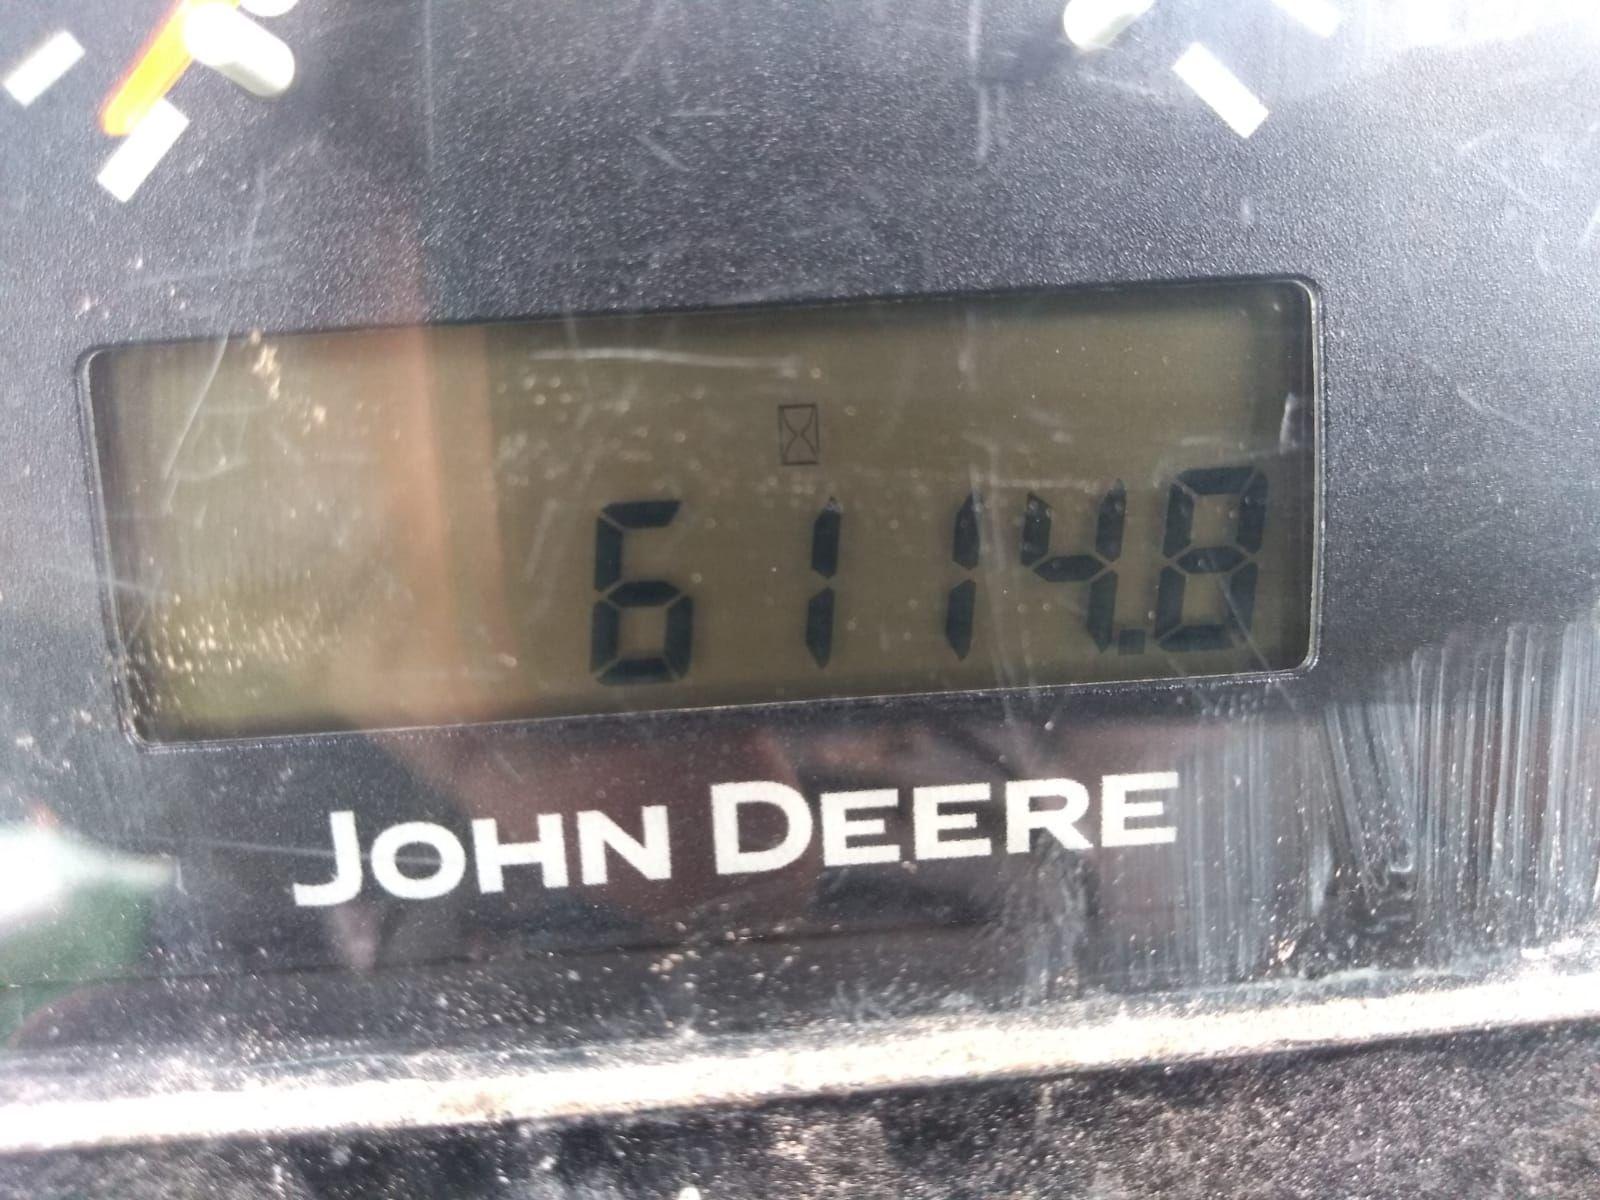 6100D JOHN DEERE TRACTOR